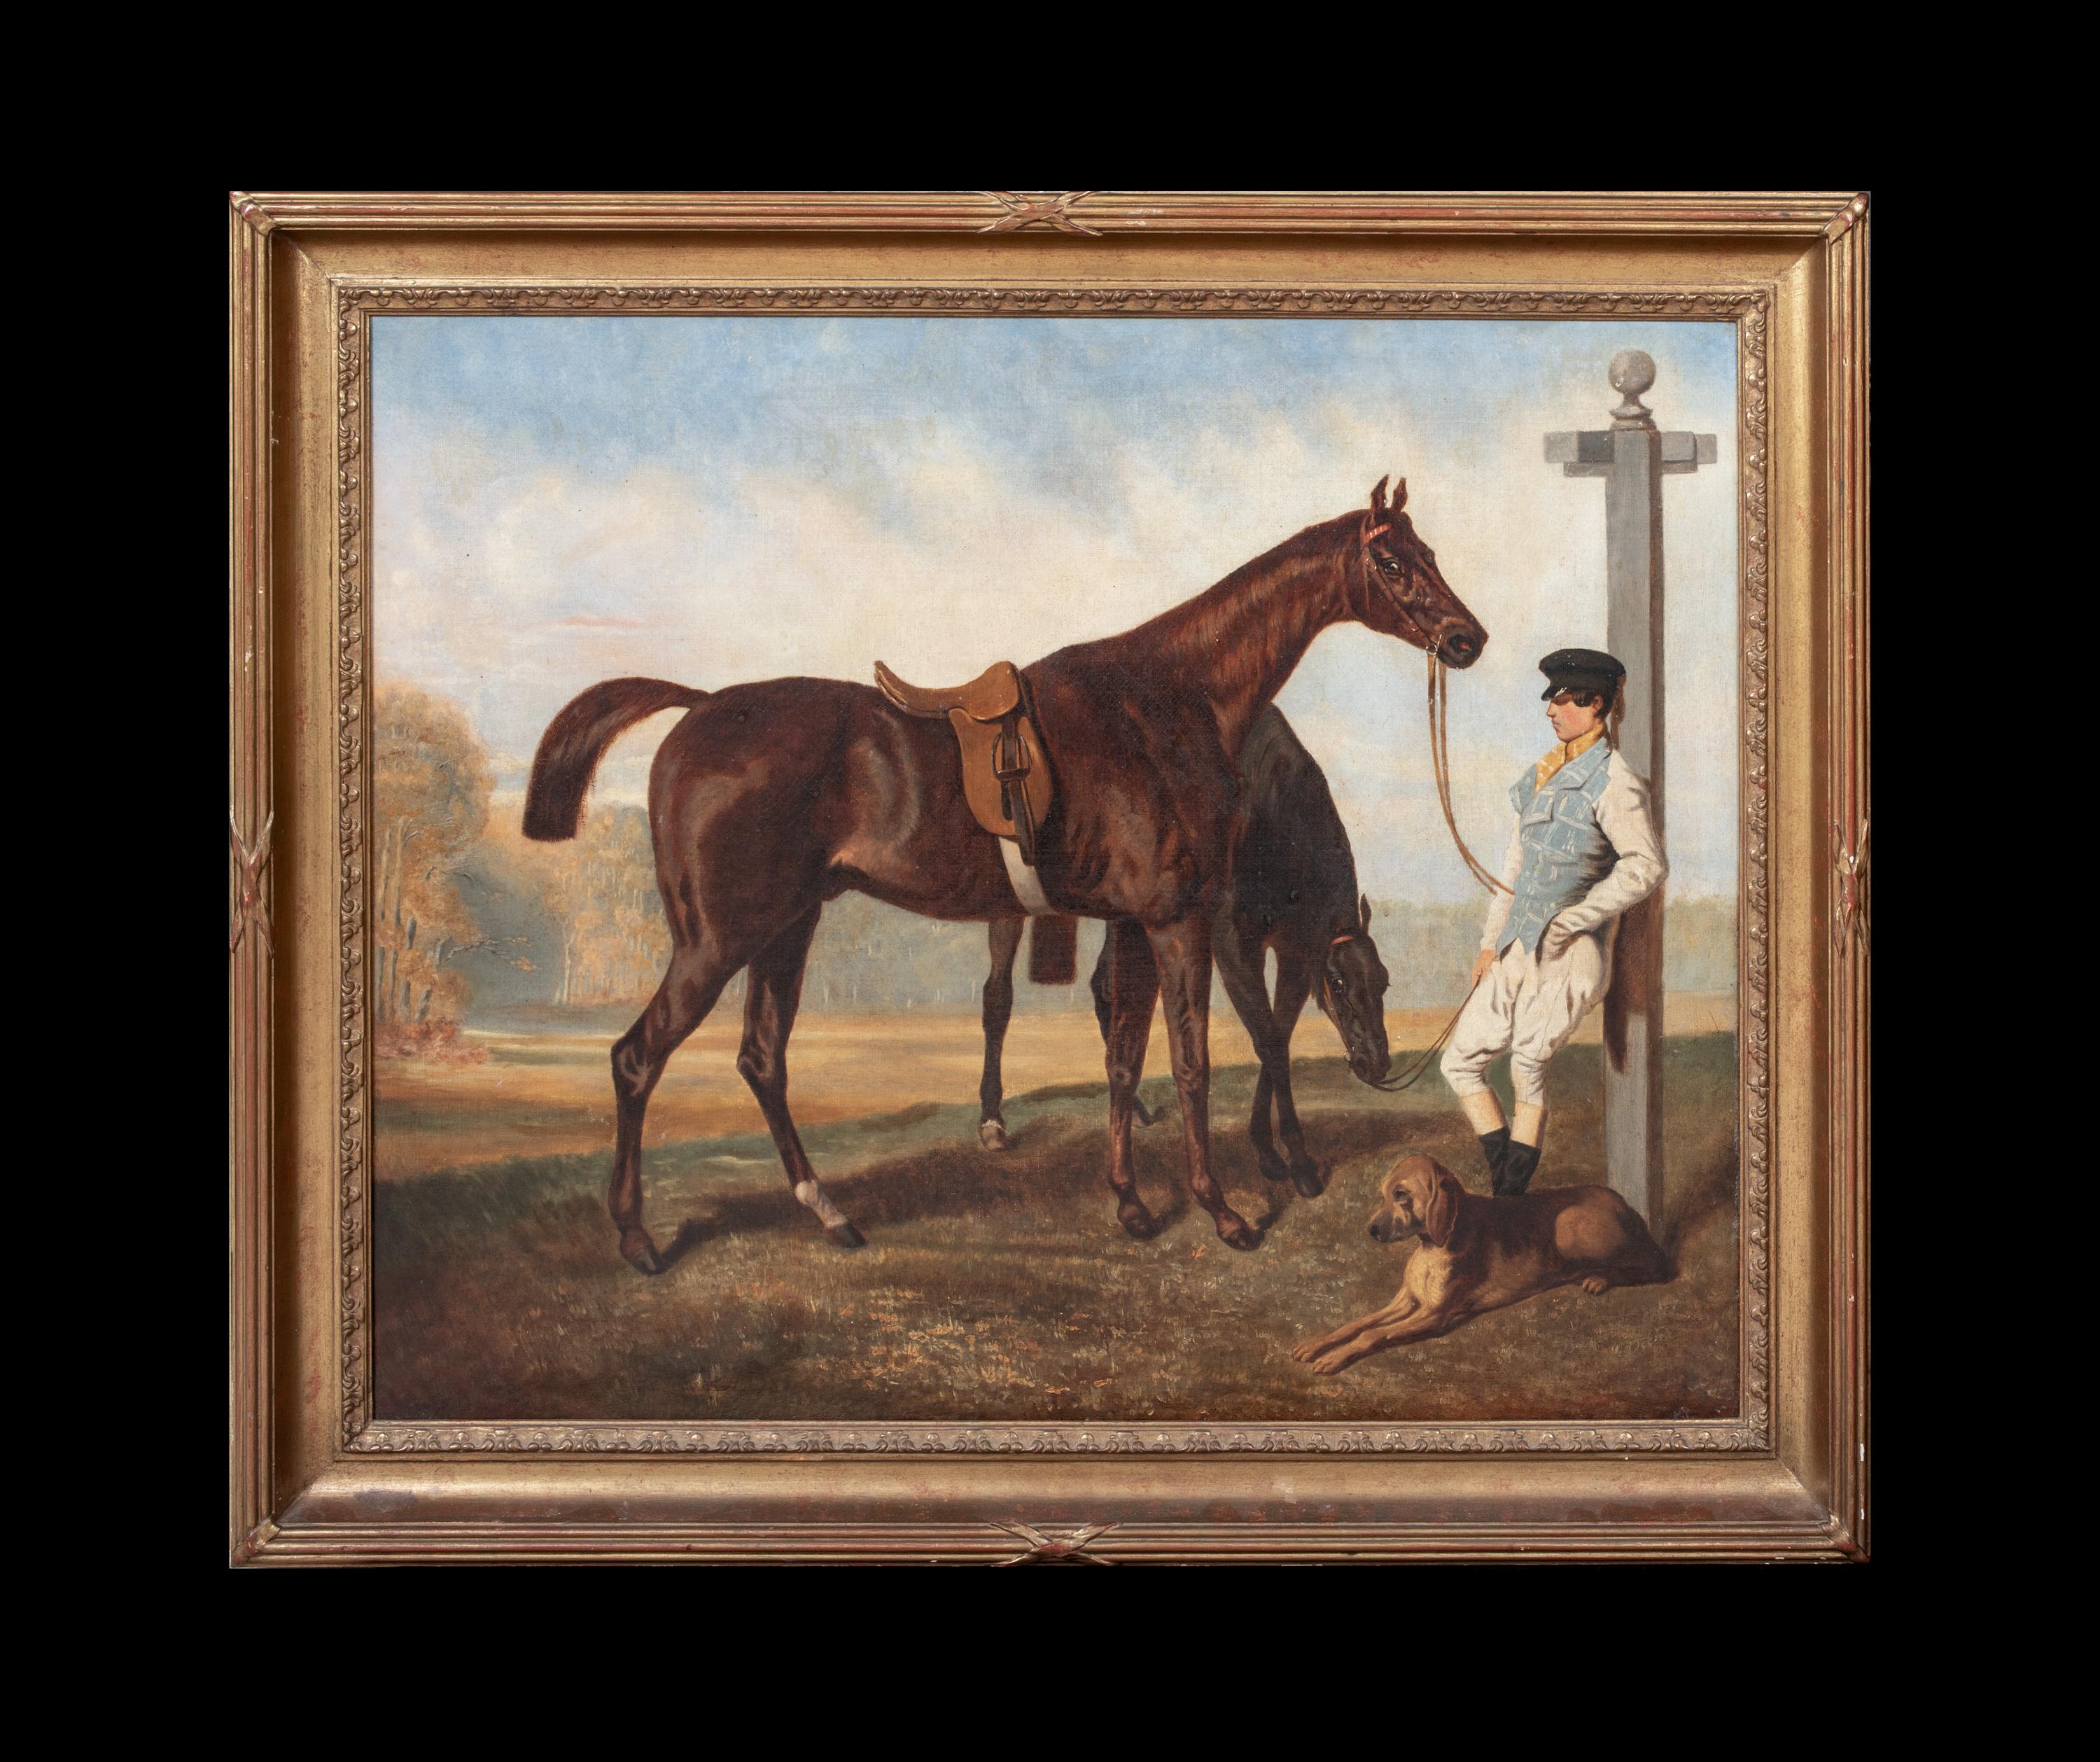 Le Lad Blanc et ses Chevaux, 19th Century - Painting by Alfred de Dreux